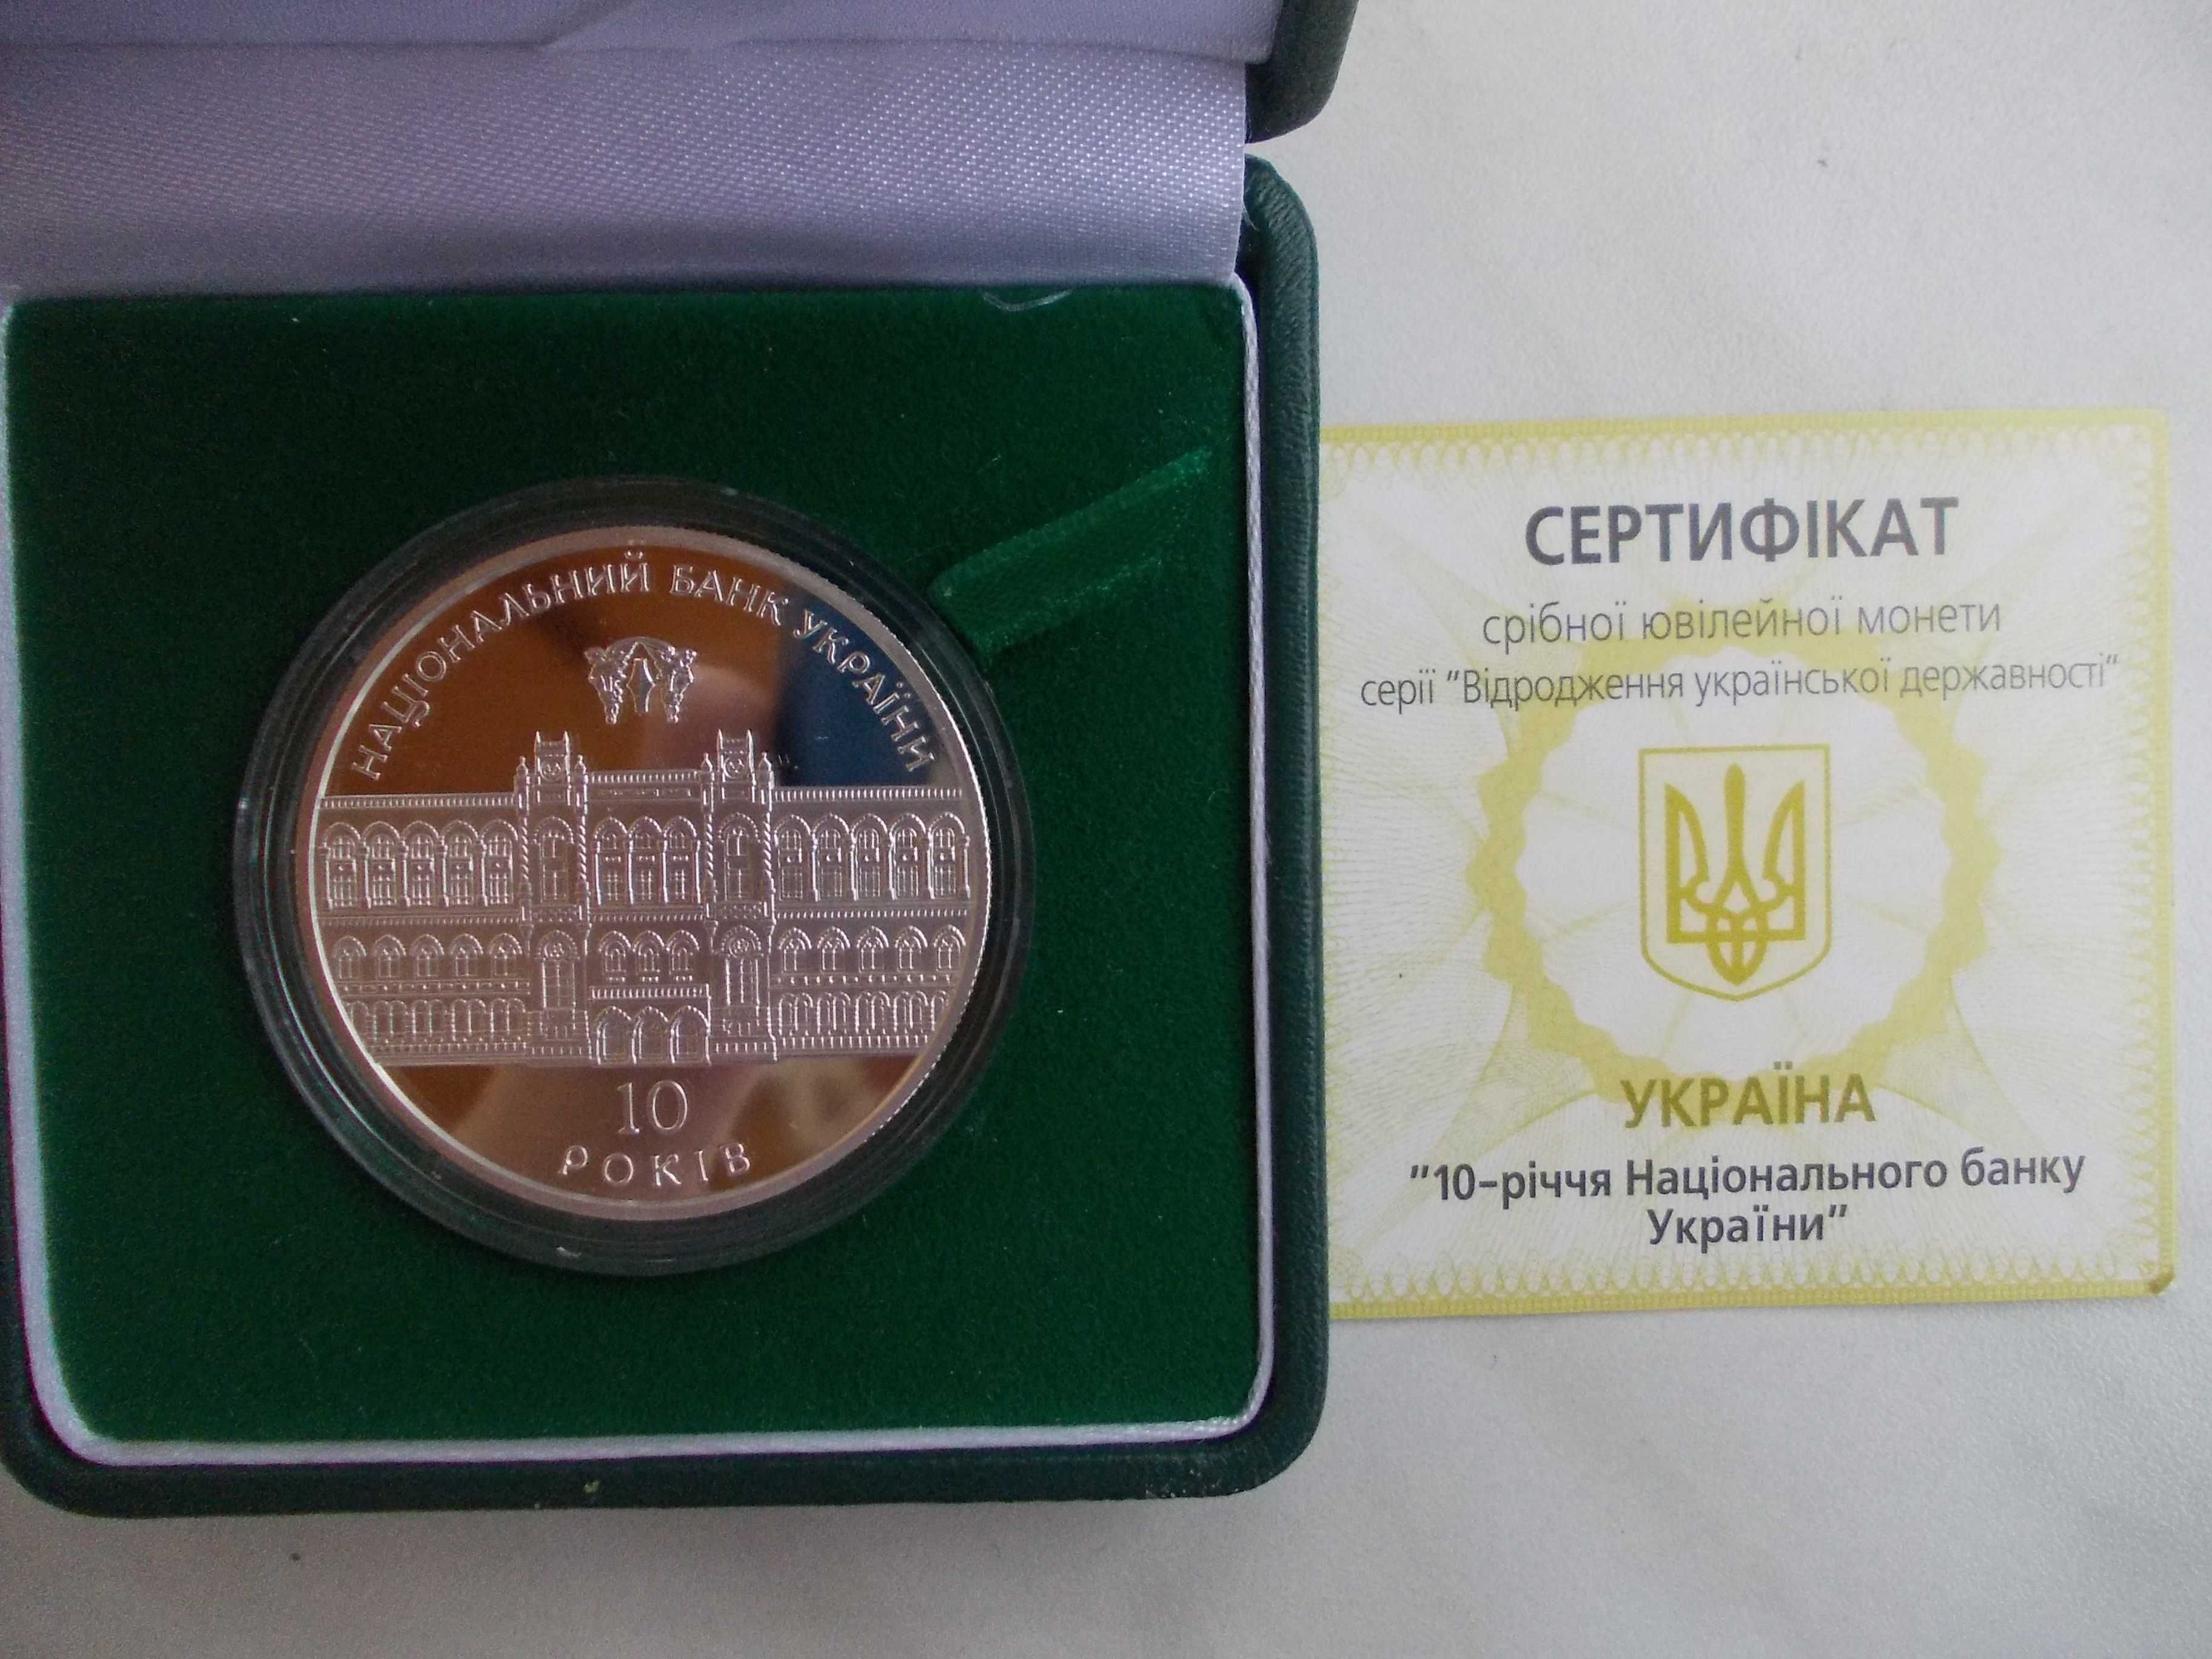 Срібна монета НБУ "10-річчя Національного банку України"